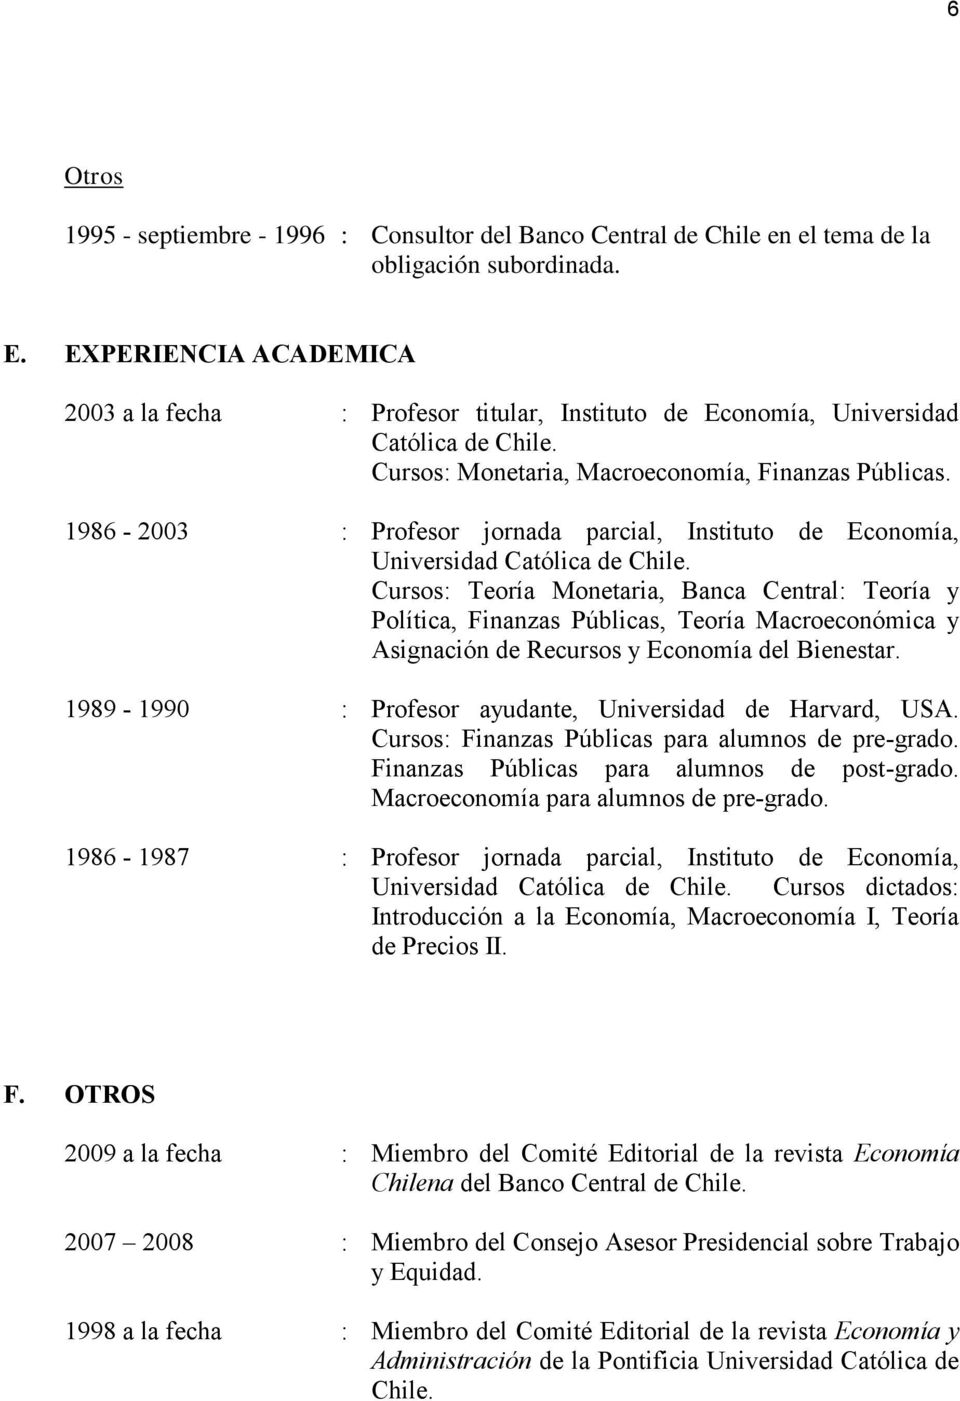 1986-2003 : Profesor jornada parcial, Instituto de Economía, Universidad Católica de Chile.